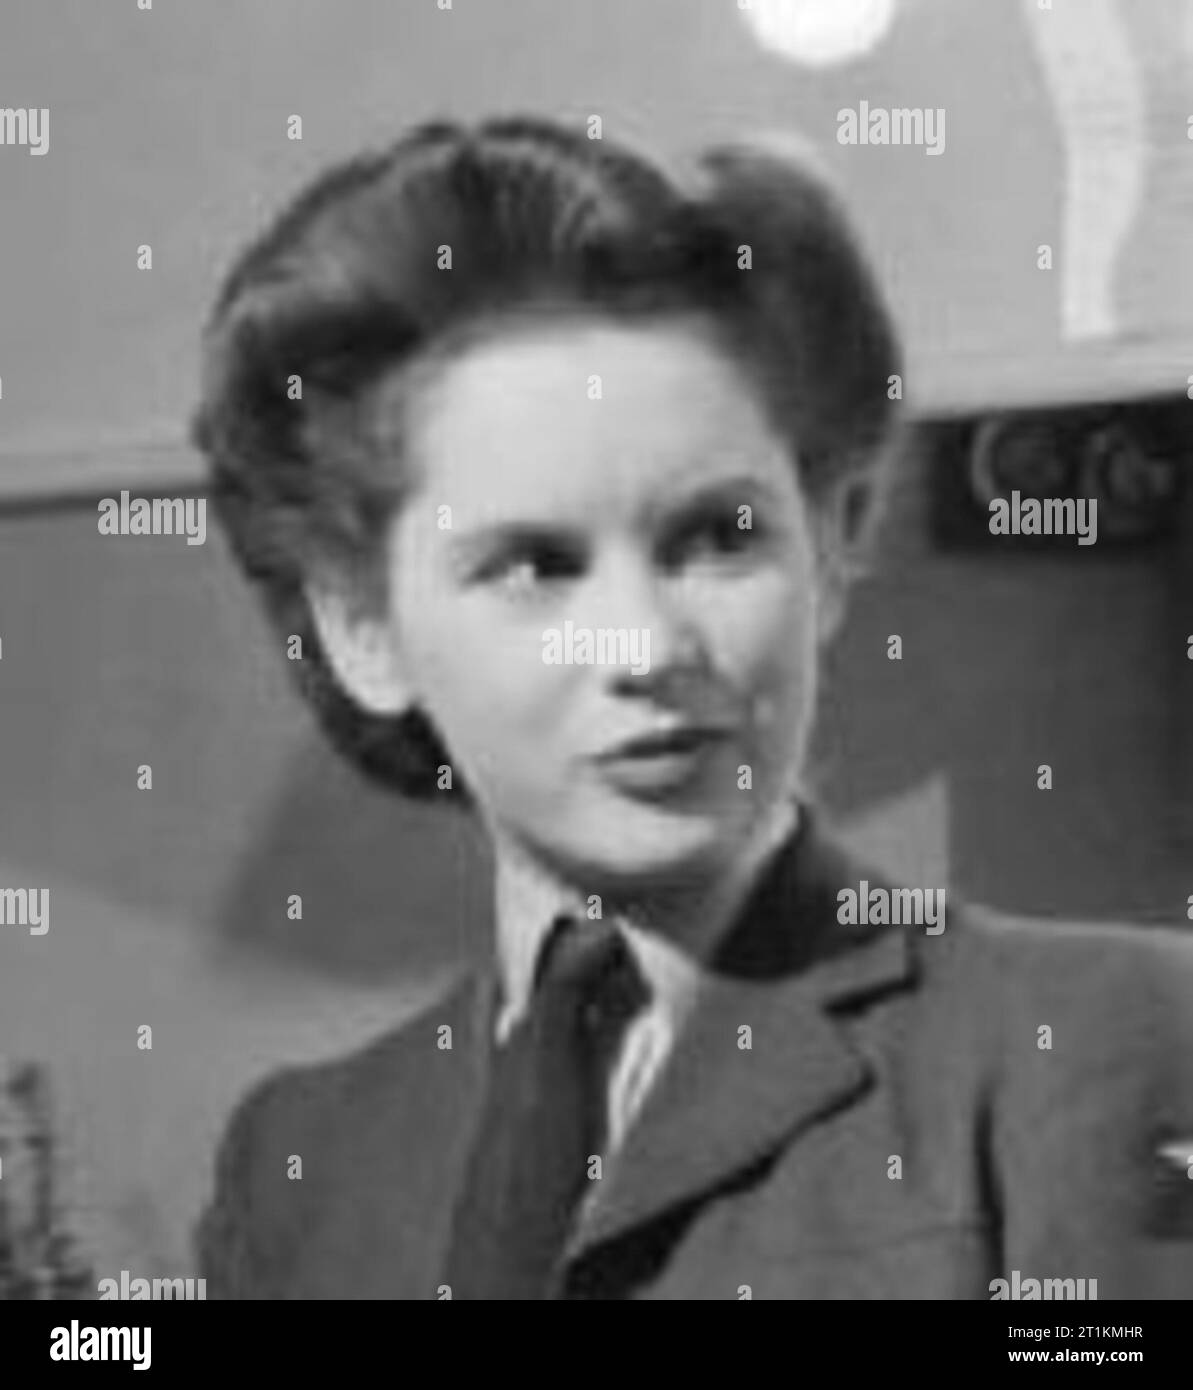 L'actrice Muriel Pavlow s'entretient avec le directeur de casting de la Lennard Bob Associated British Picture Corporation dans sa loge au Globe Theatre, Londres au cours de 1945. L'actrice Muriel Pavlow boissons thé dans sa loge au Globe Theatre, Londres, comme elle s'entretient au "talent spotter" (directeur de casting) Bob de Lennard l'Associated British Picture Corporation. Muriel est vêtue d'un Women's Auxiliary Air Force uniforme, comme le personnage qu'elle joue dans 'tant que le soleil brille", dans lequel elle est actuellement au monde, est une WAAF. Banque D'Images